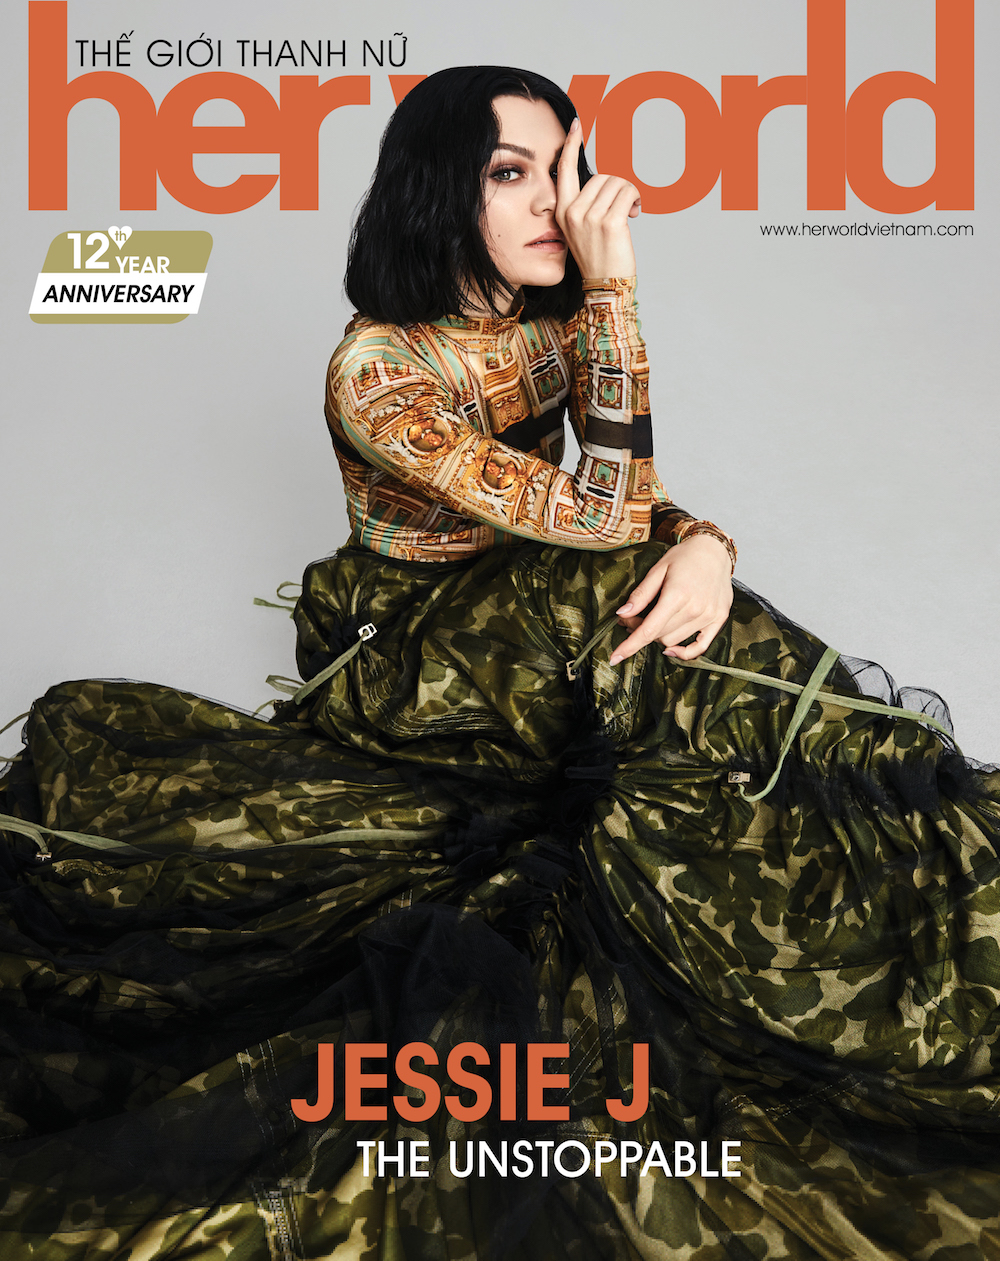 Jessie J: Tôi chưa bao giờ giỏi cái gì, chỉ giỏi hát